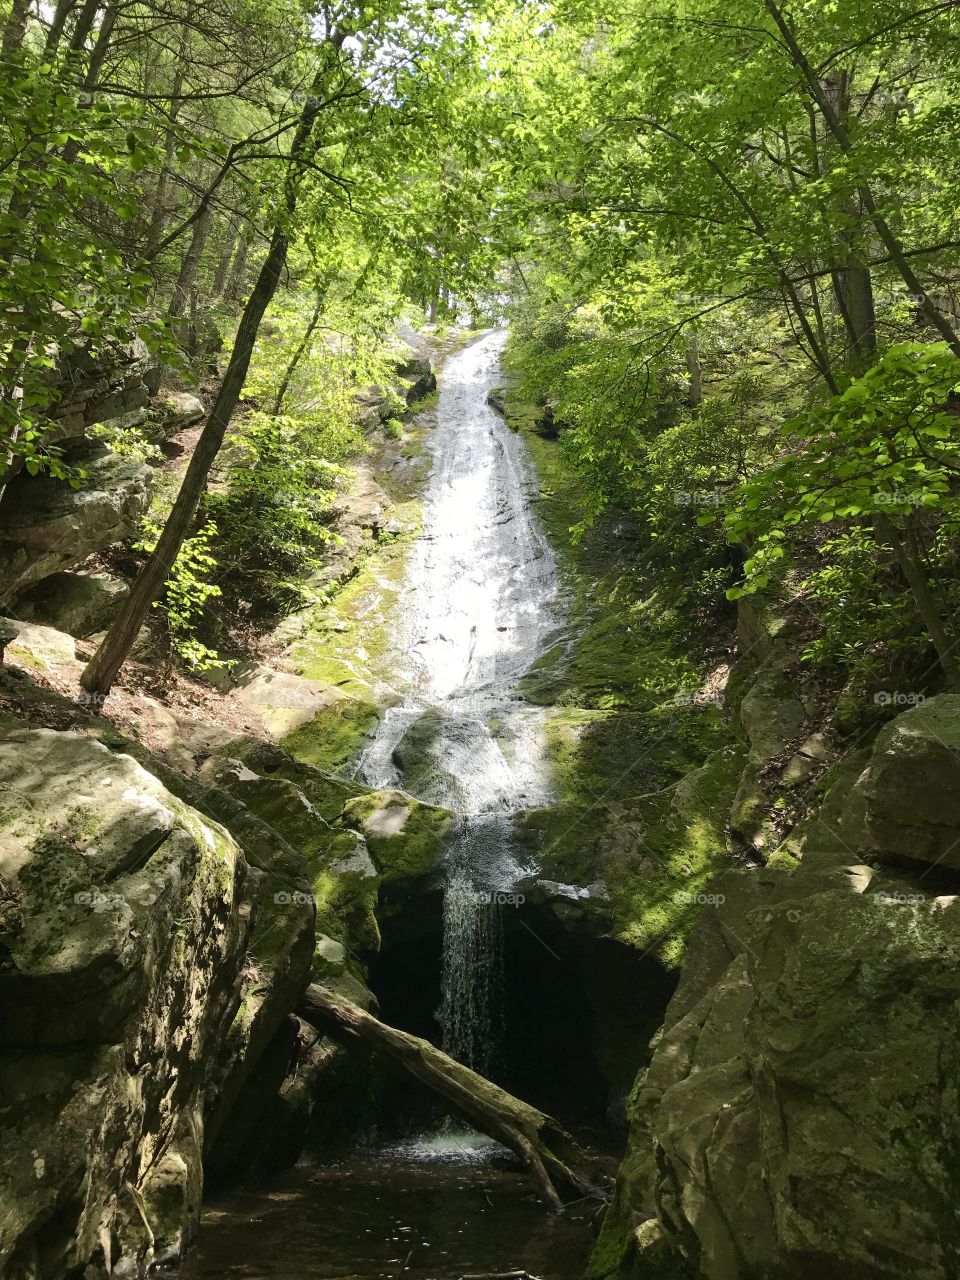 Free flowing falls